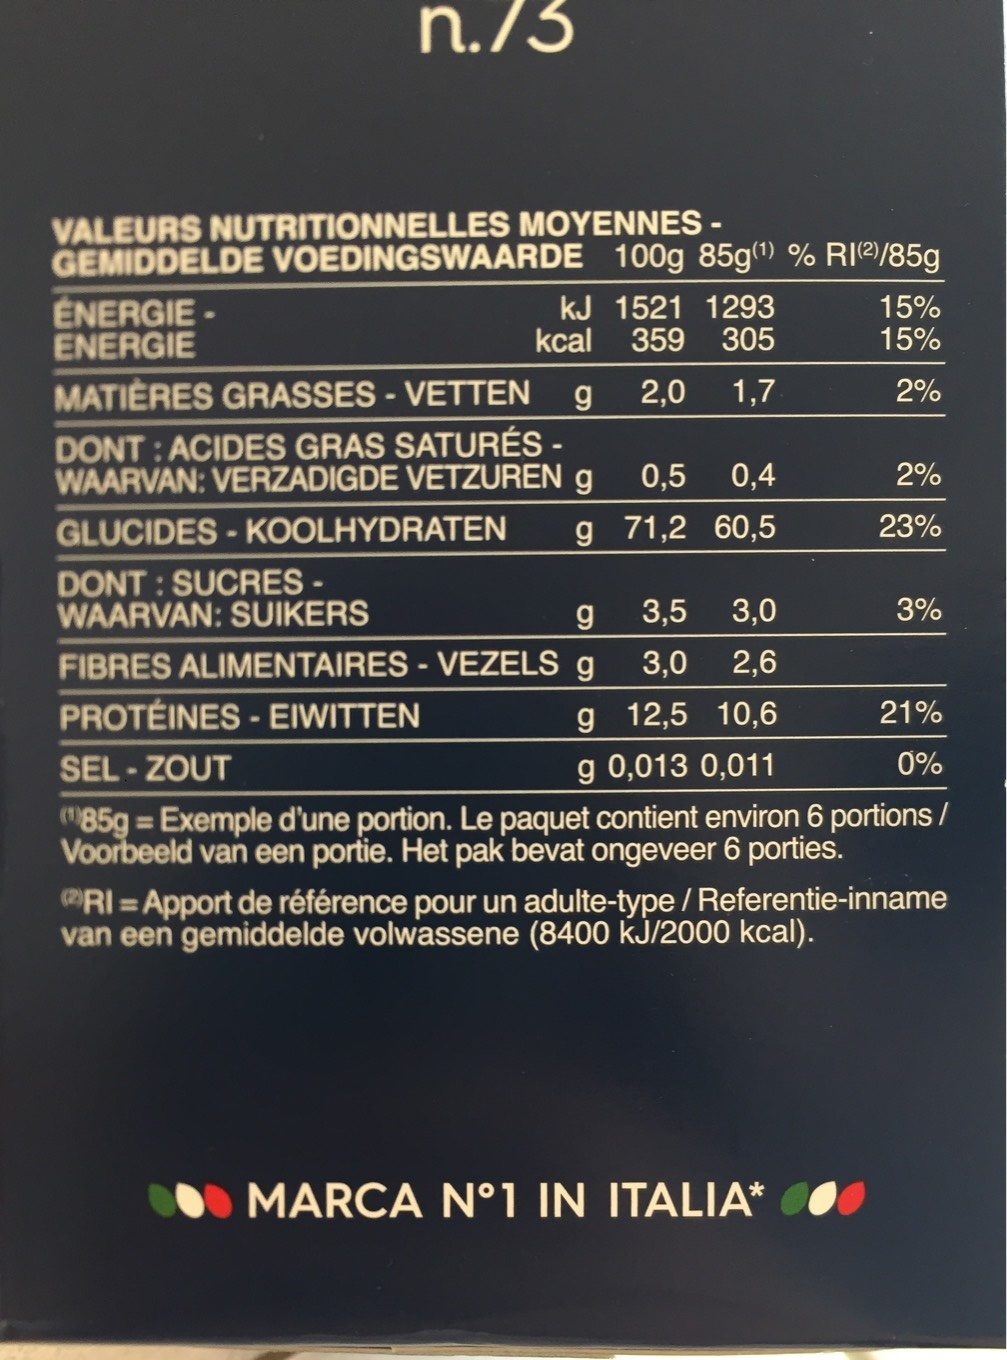 Penne Rigate n.73 - Tableau nutritionnel